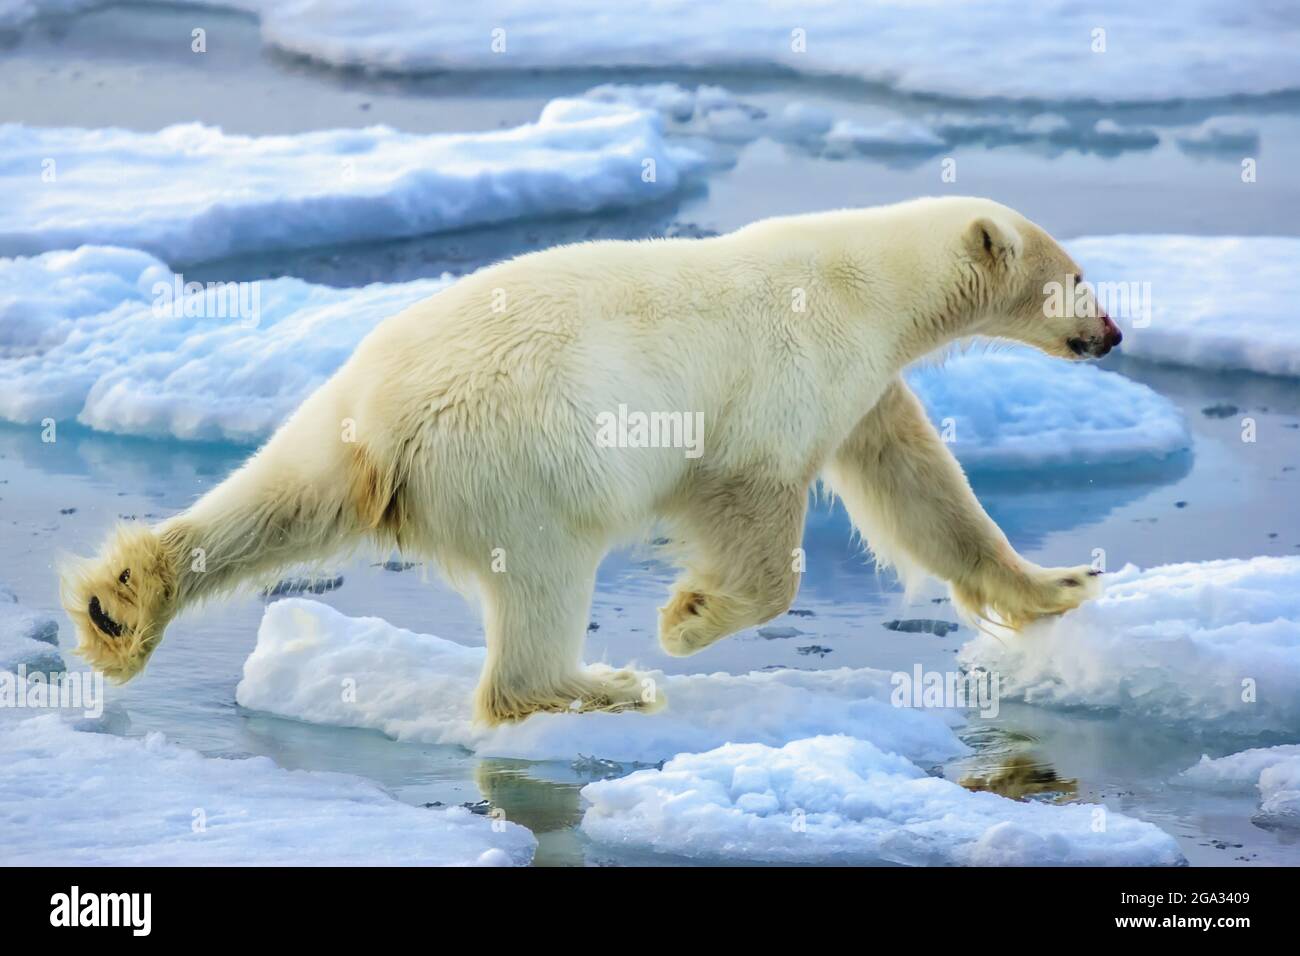 Ours polaire (Ursus maritimus) chassant le long de la lisière de glace,  réserve naturelle du Svalbard nord-est; Svalbard, Norvège Photo Stock -  Alamy